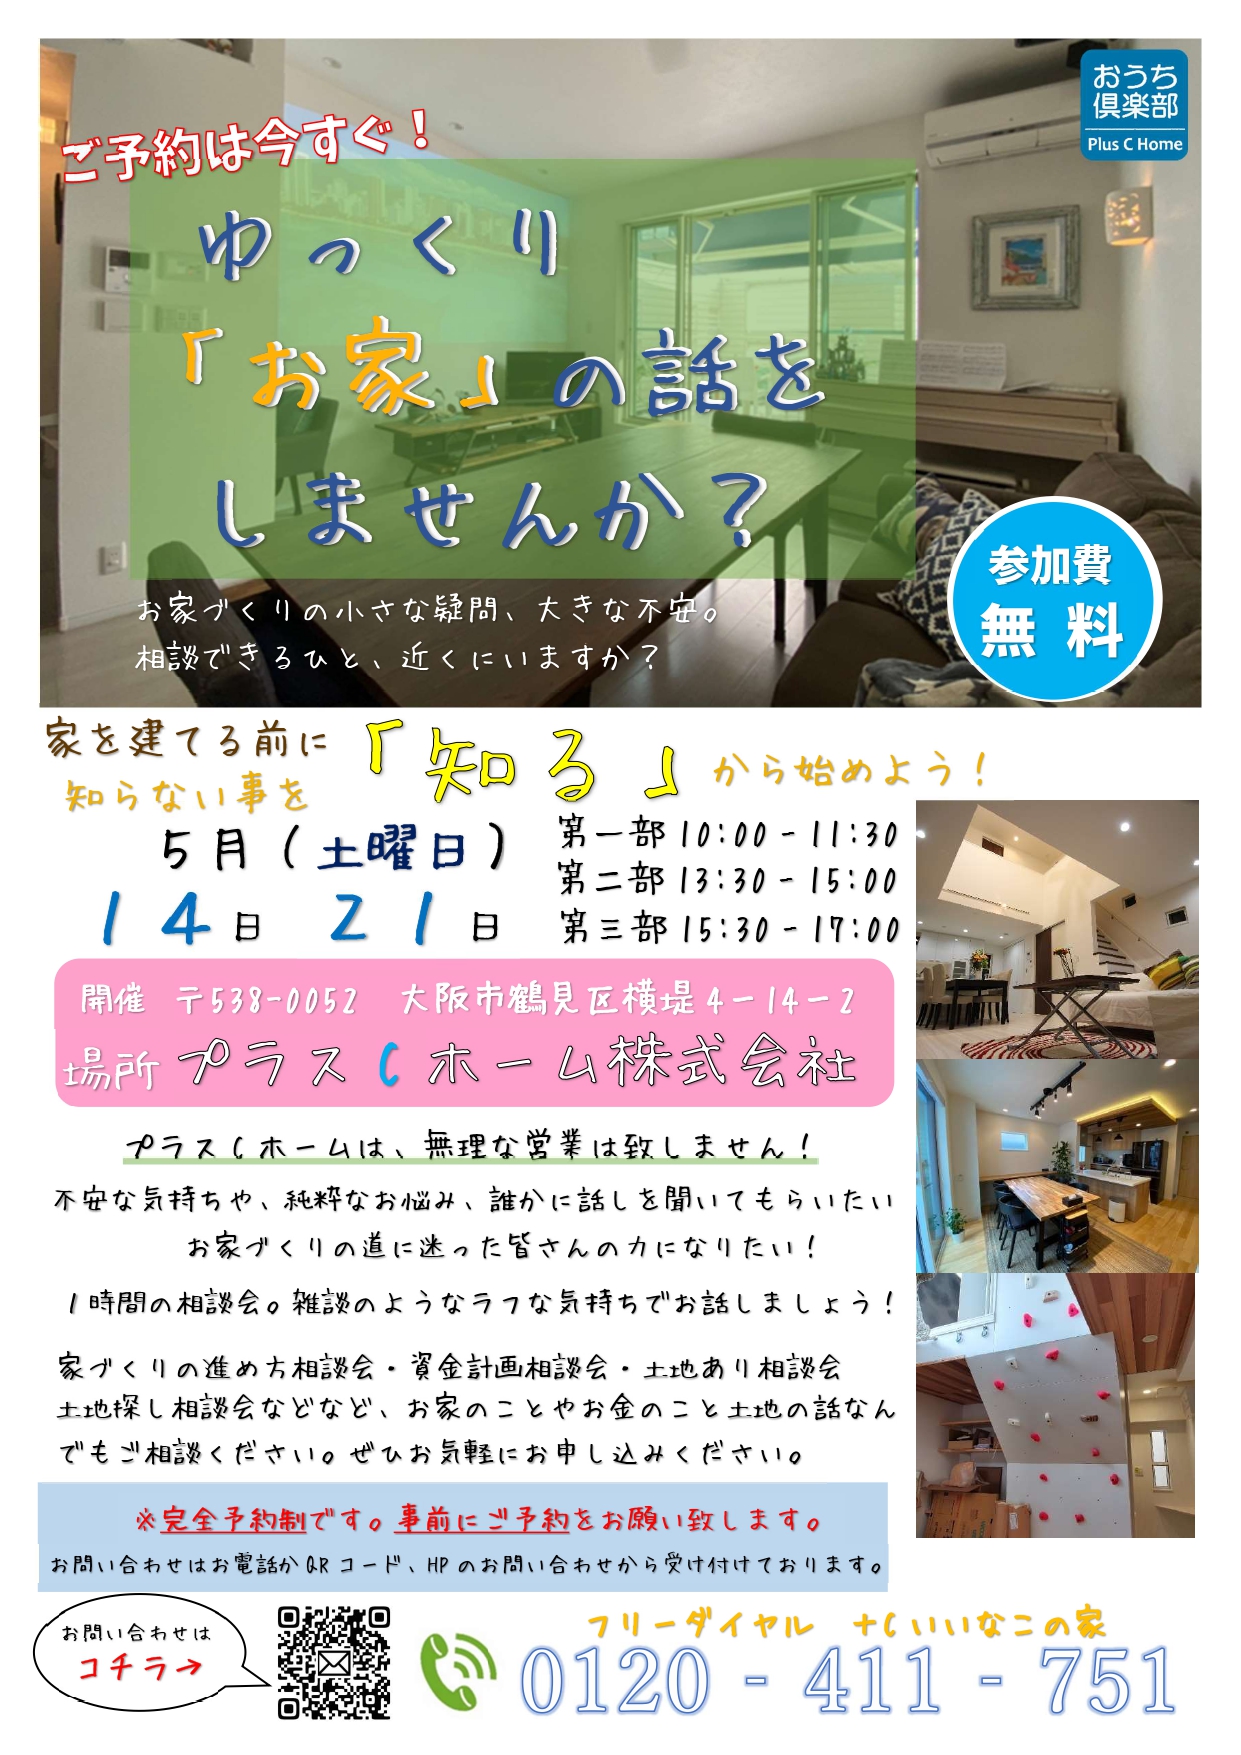 ５組様のご縁に感謝です。大阪市鶴見区で高断熱・高気密住宅を建てております工務店Plus C Homeがお話会を開催します♪